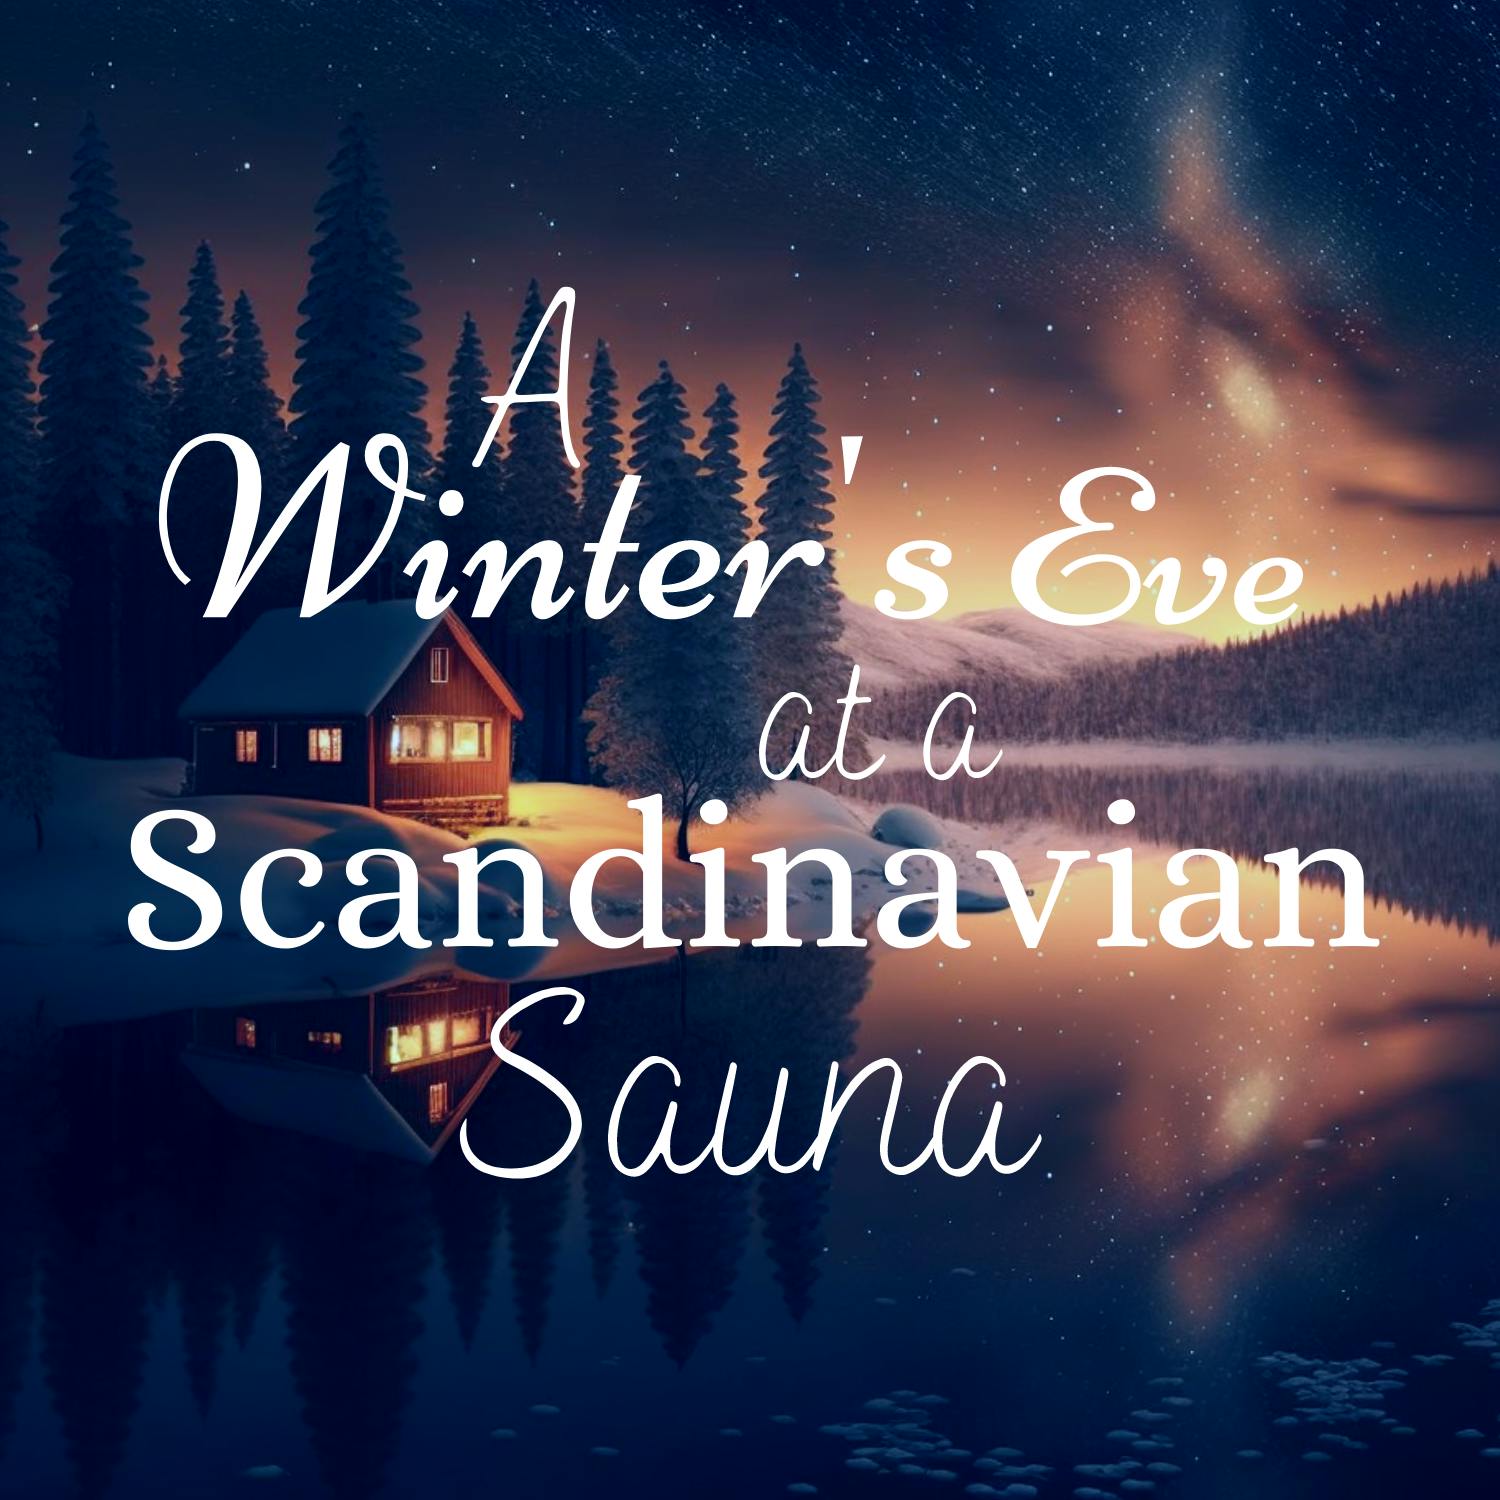 A Winter's Eve at a Scandinavian Sauna